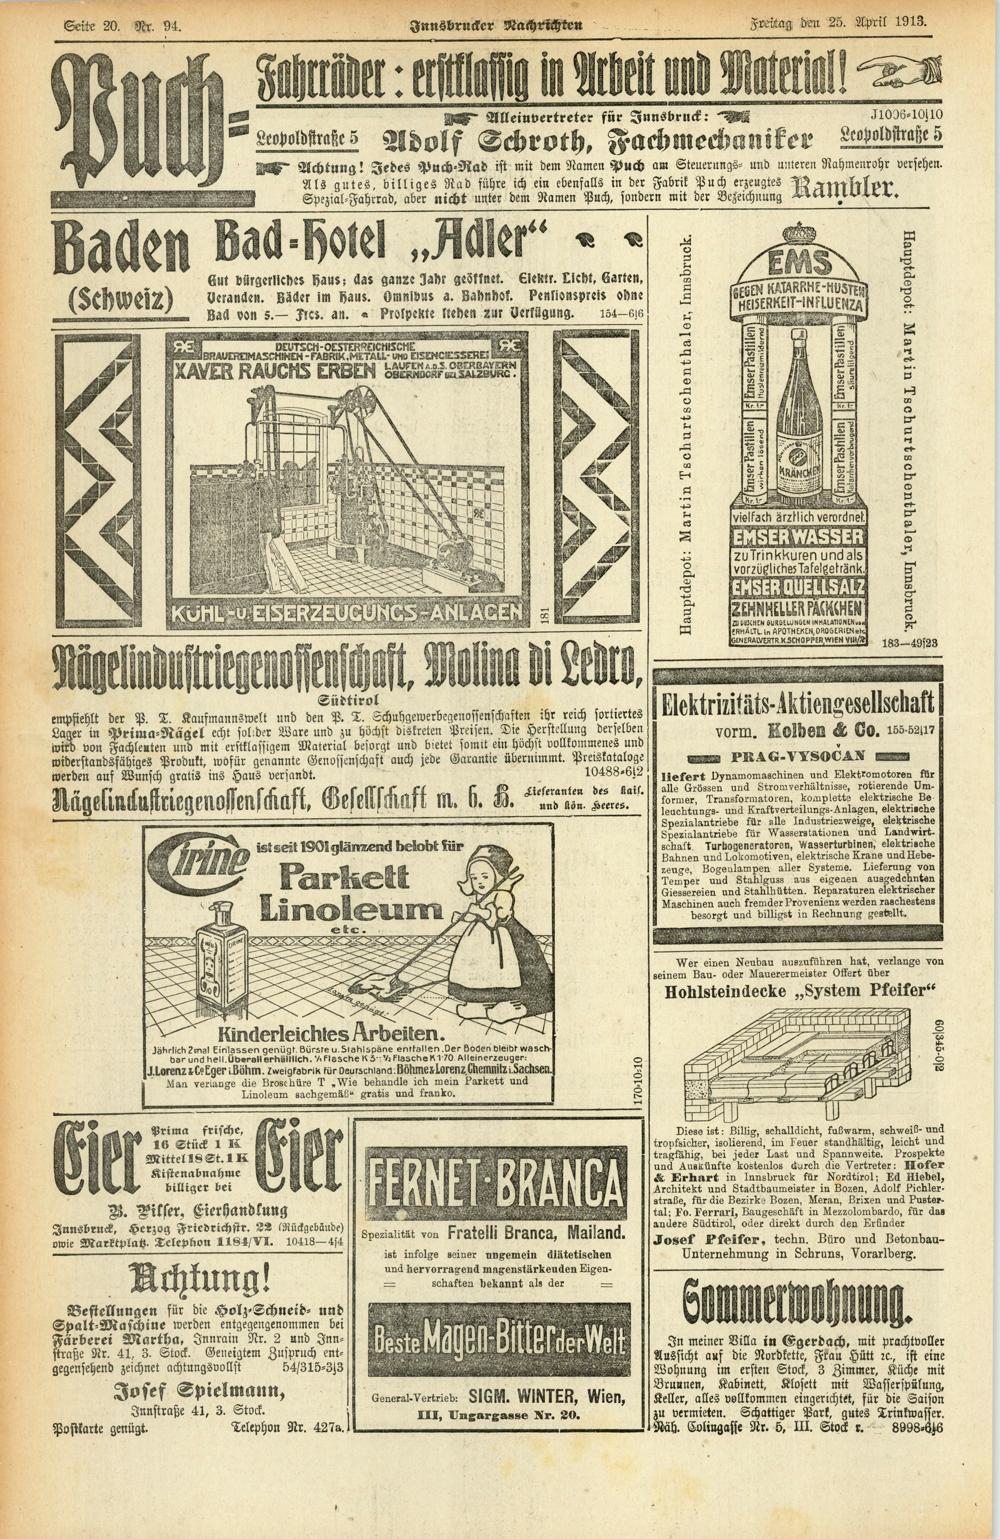 Seite 20. Nr. 94. Innsbrucker Nachrichten Kreitag! den 25. April 1913. Alleinvertreter für Innsbruck: J1036*10jl0 LeopoldAraße 5 Adolf Schroth, Fachmechaniker Lco-oidstraße 5 Achtung!